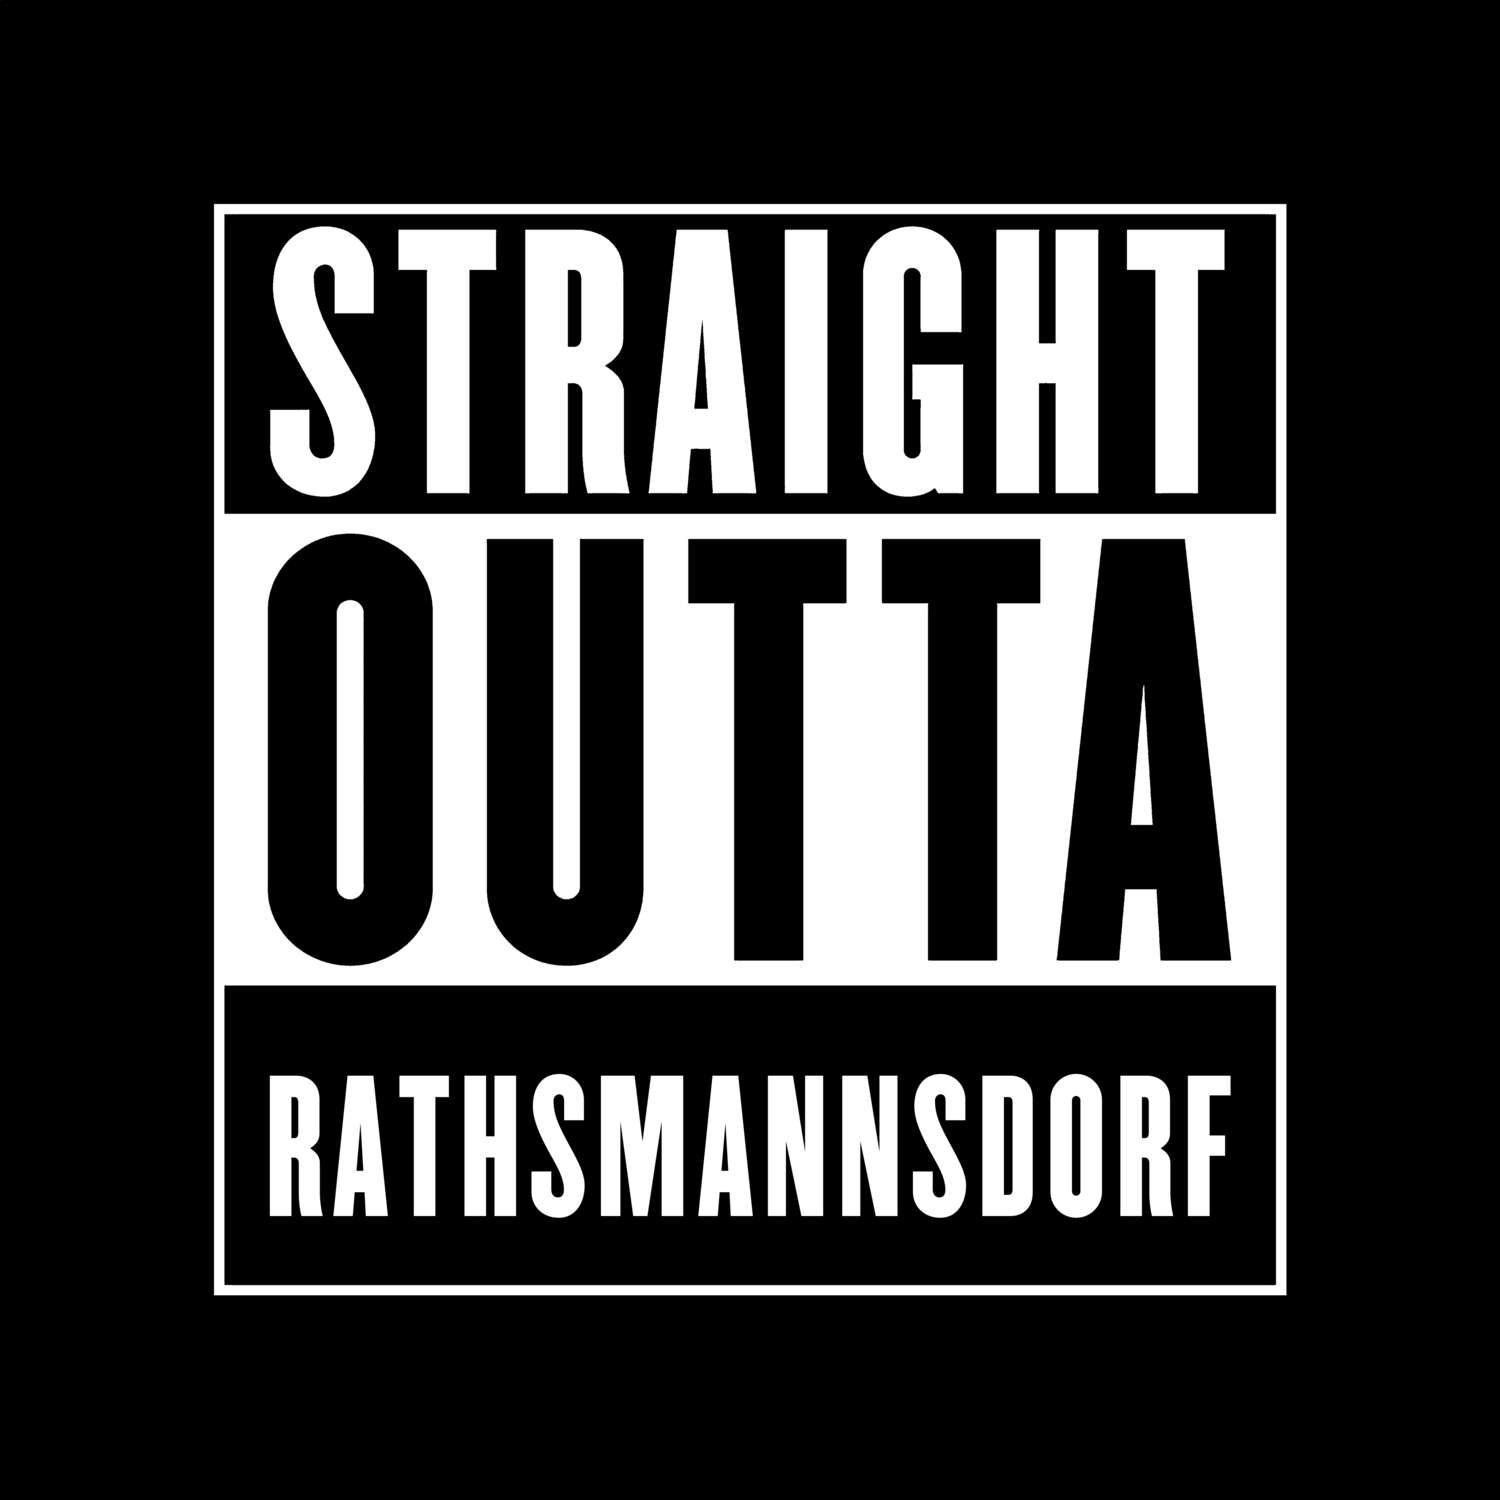 Rathsmannsdorf T-Shirt »Straight Outta«